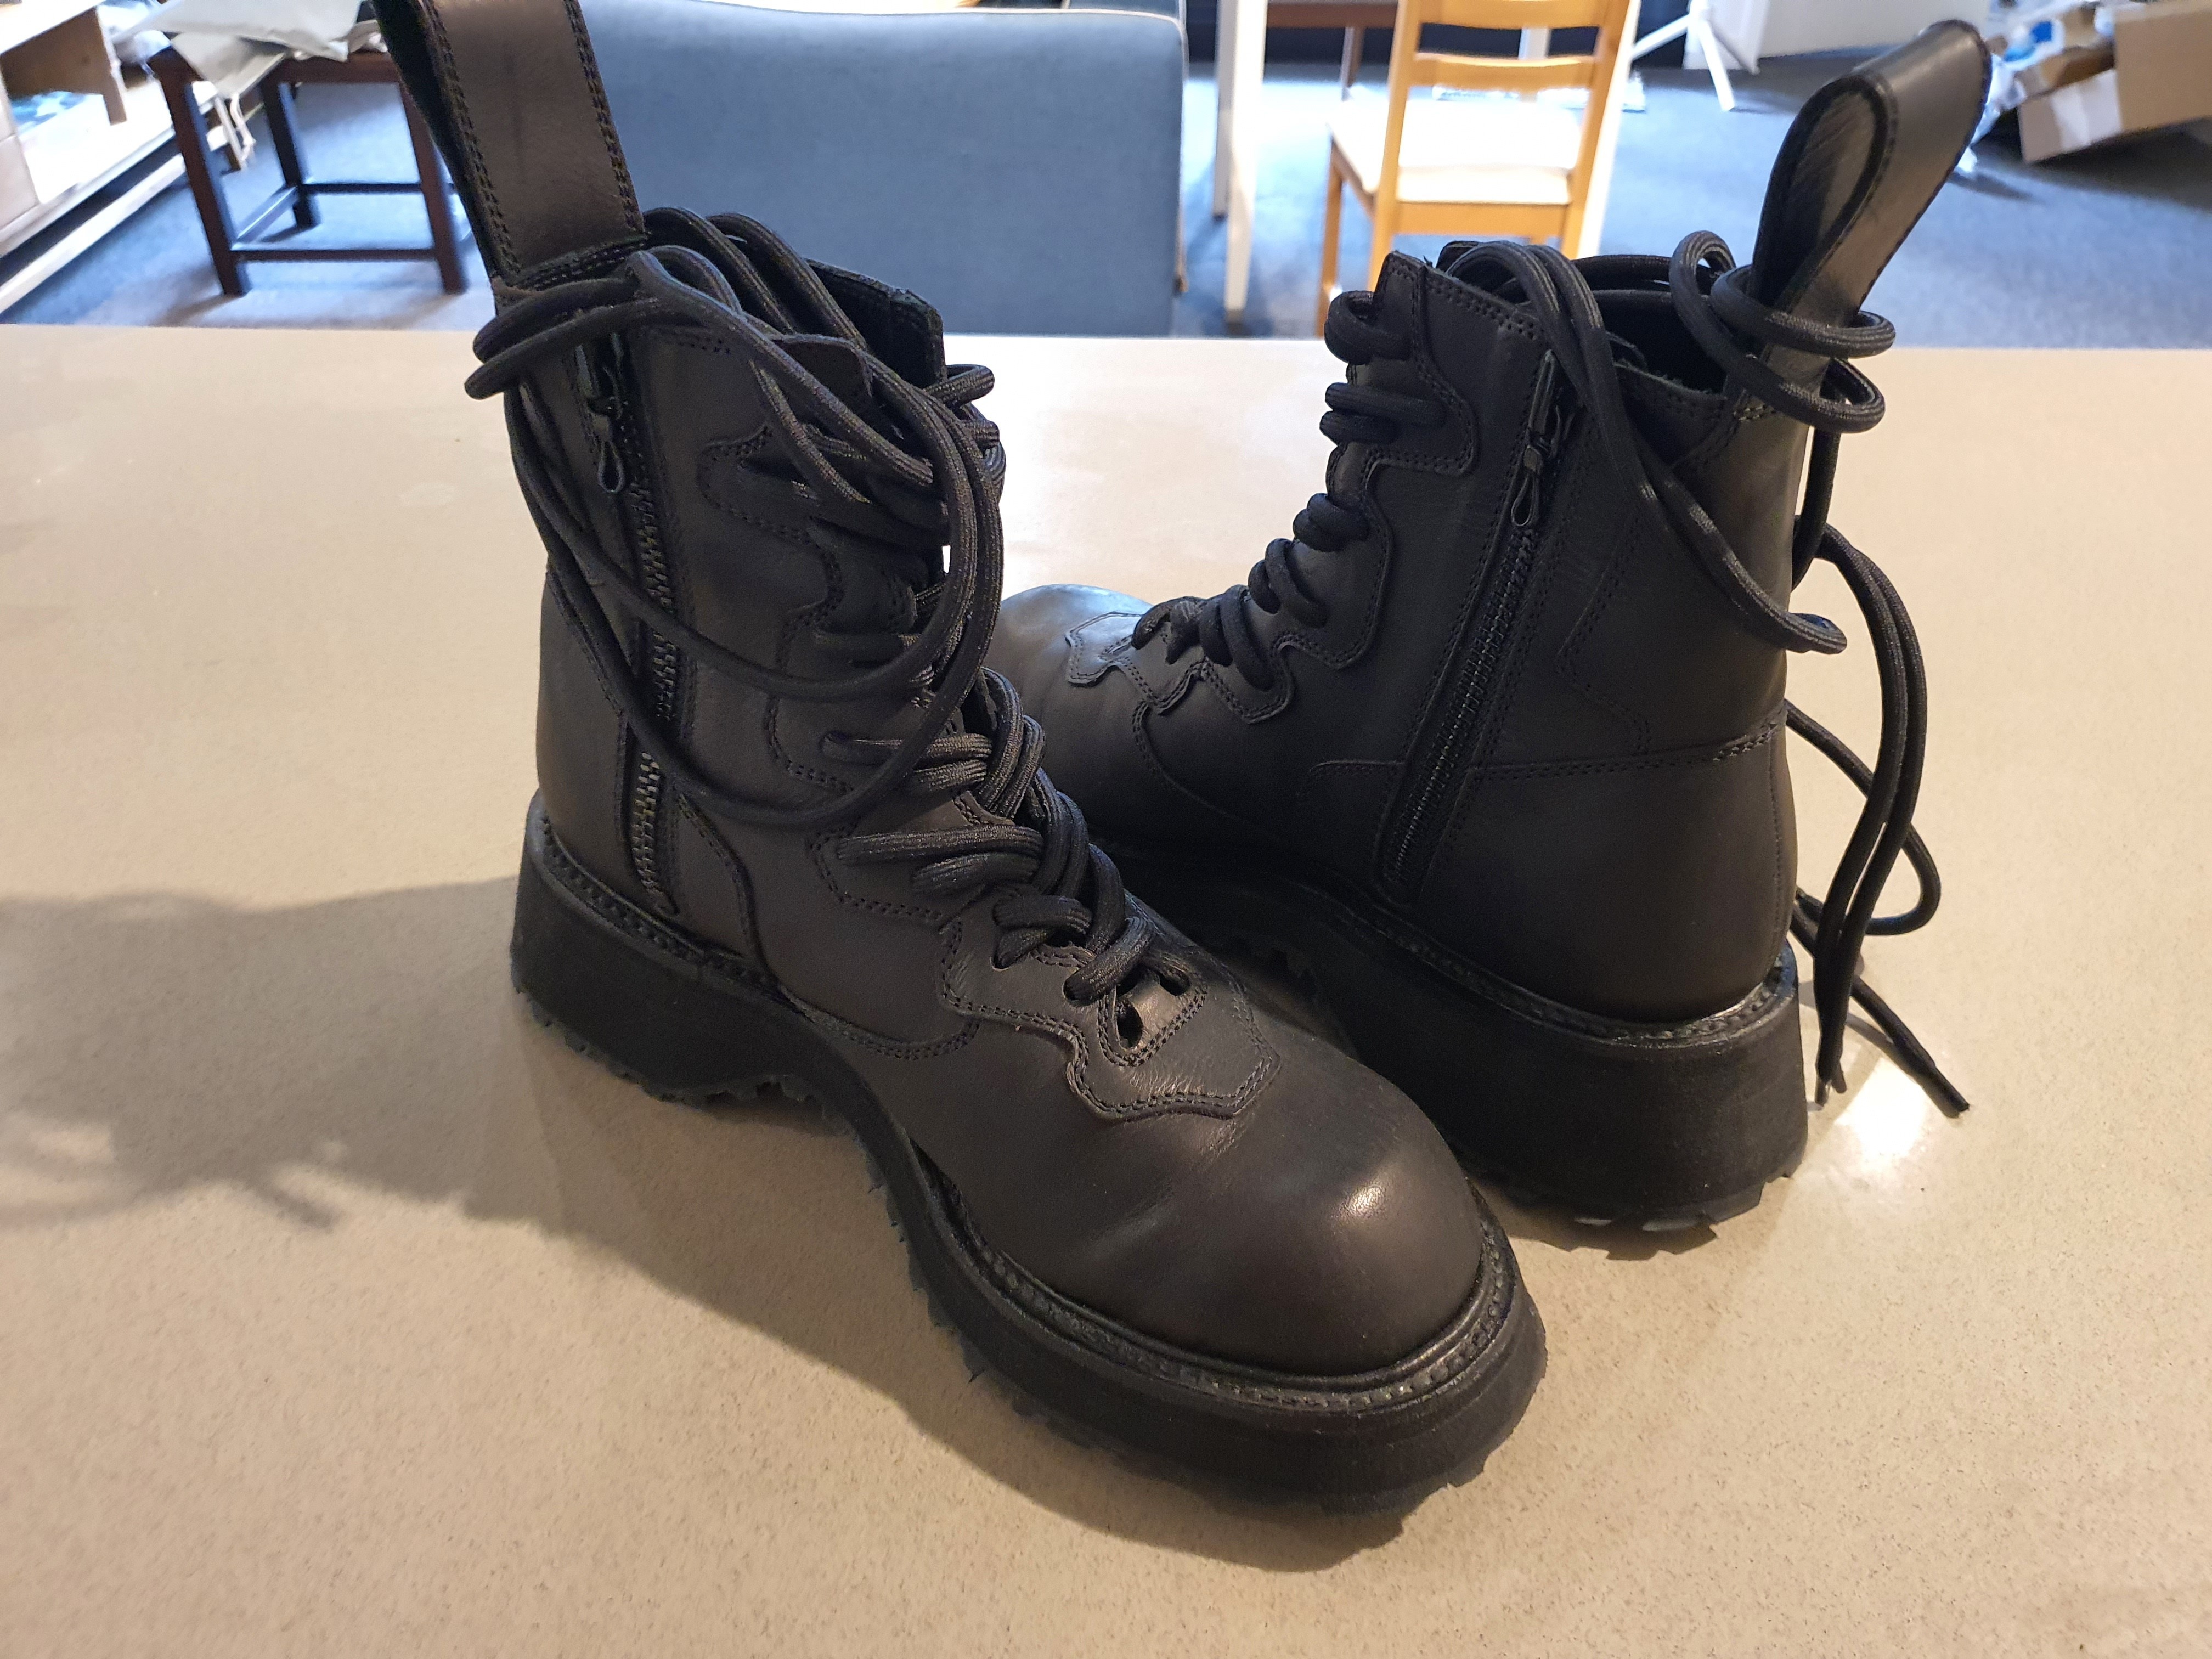 Double Lace Combat Boots - 2